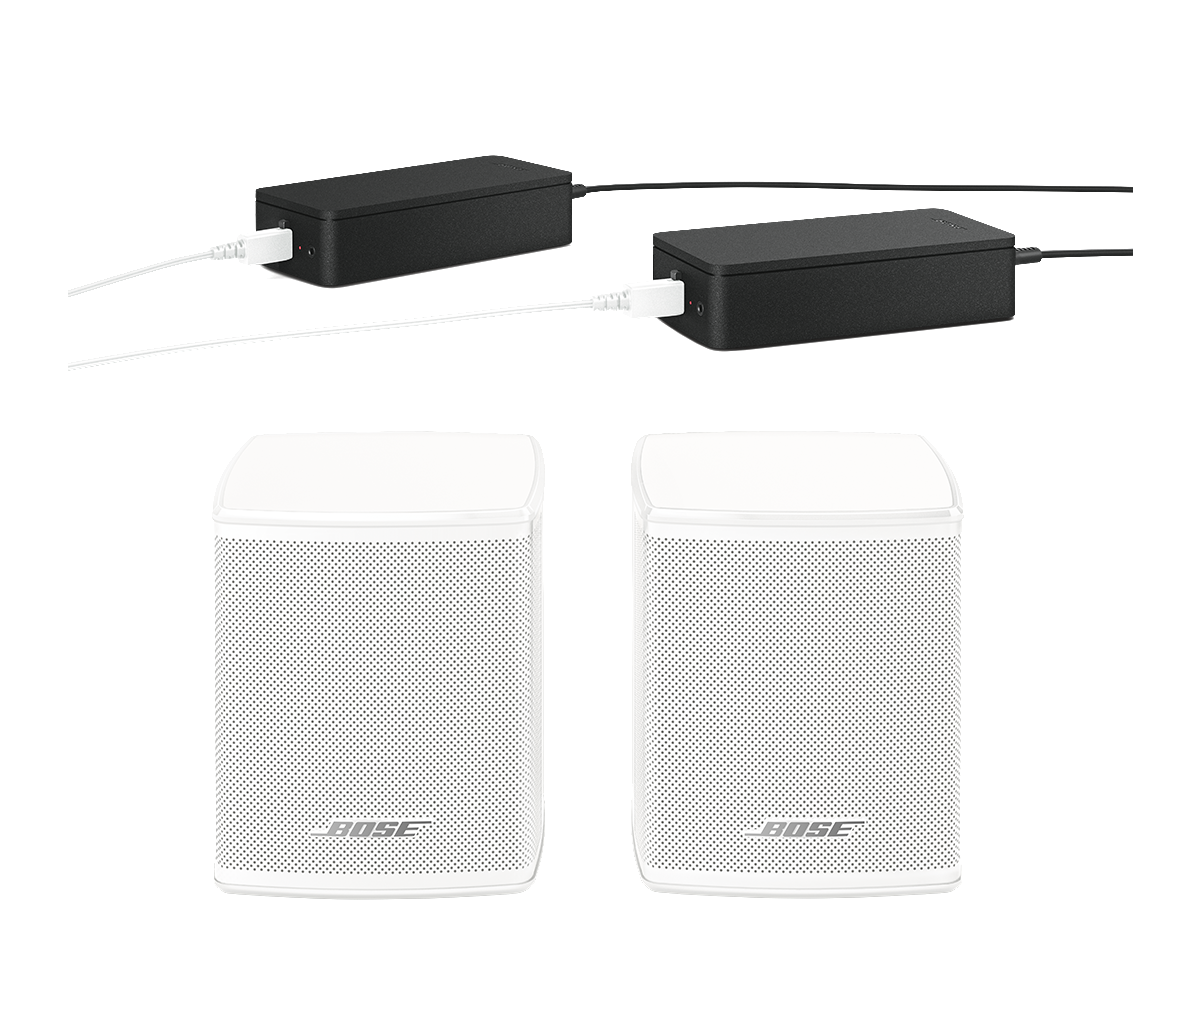 Bose Surround Speakers | Bose